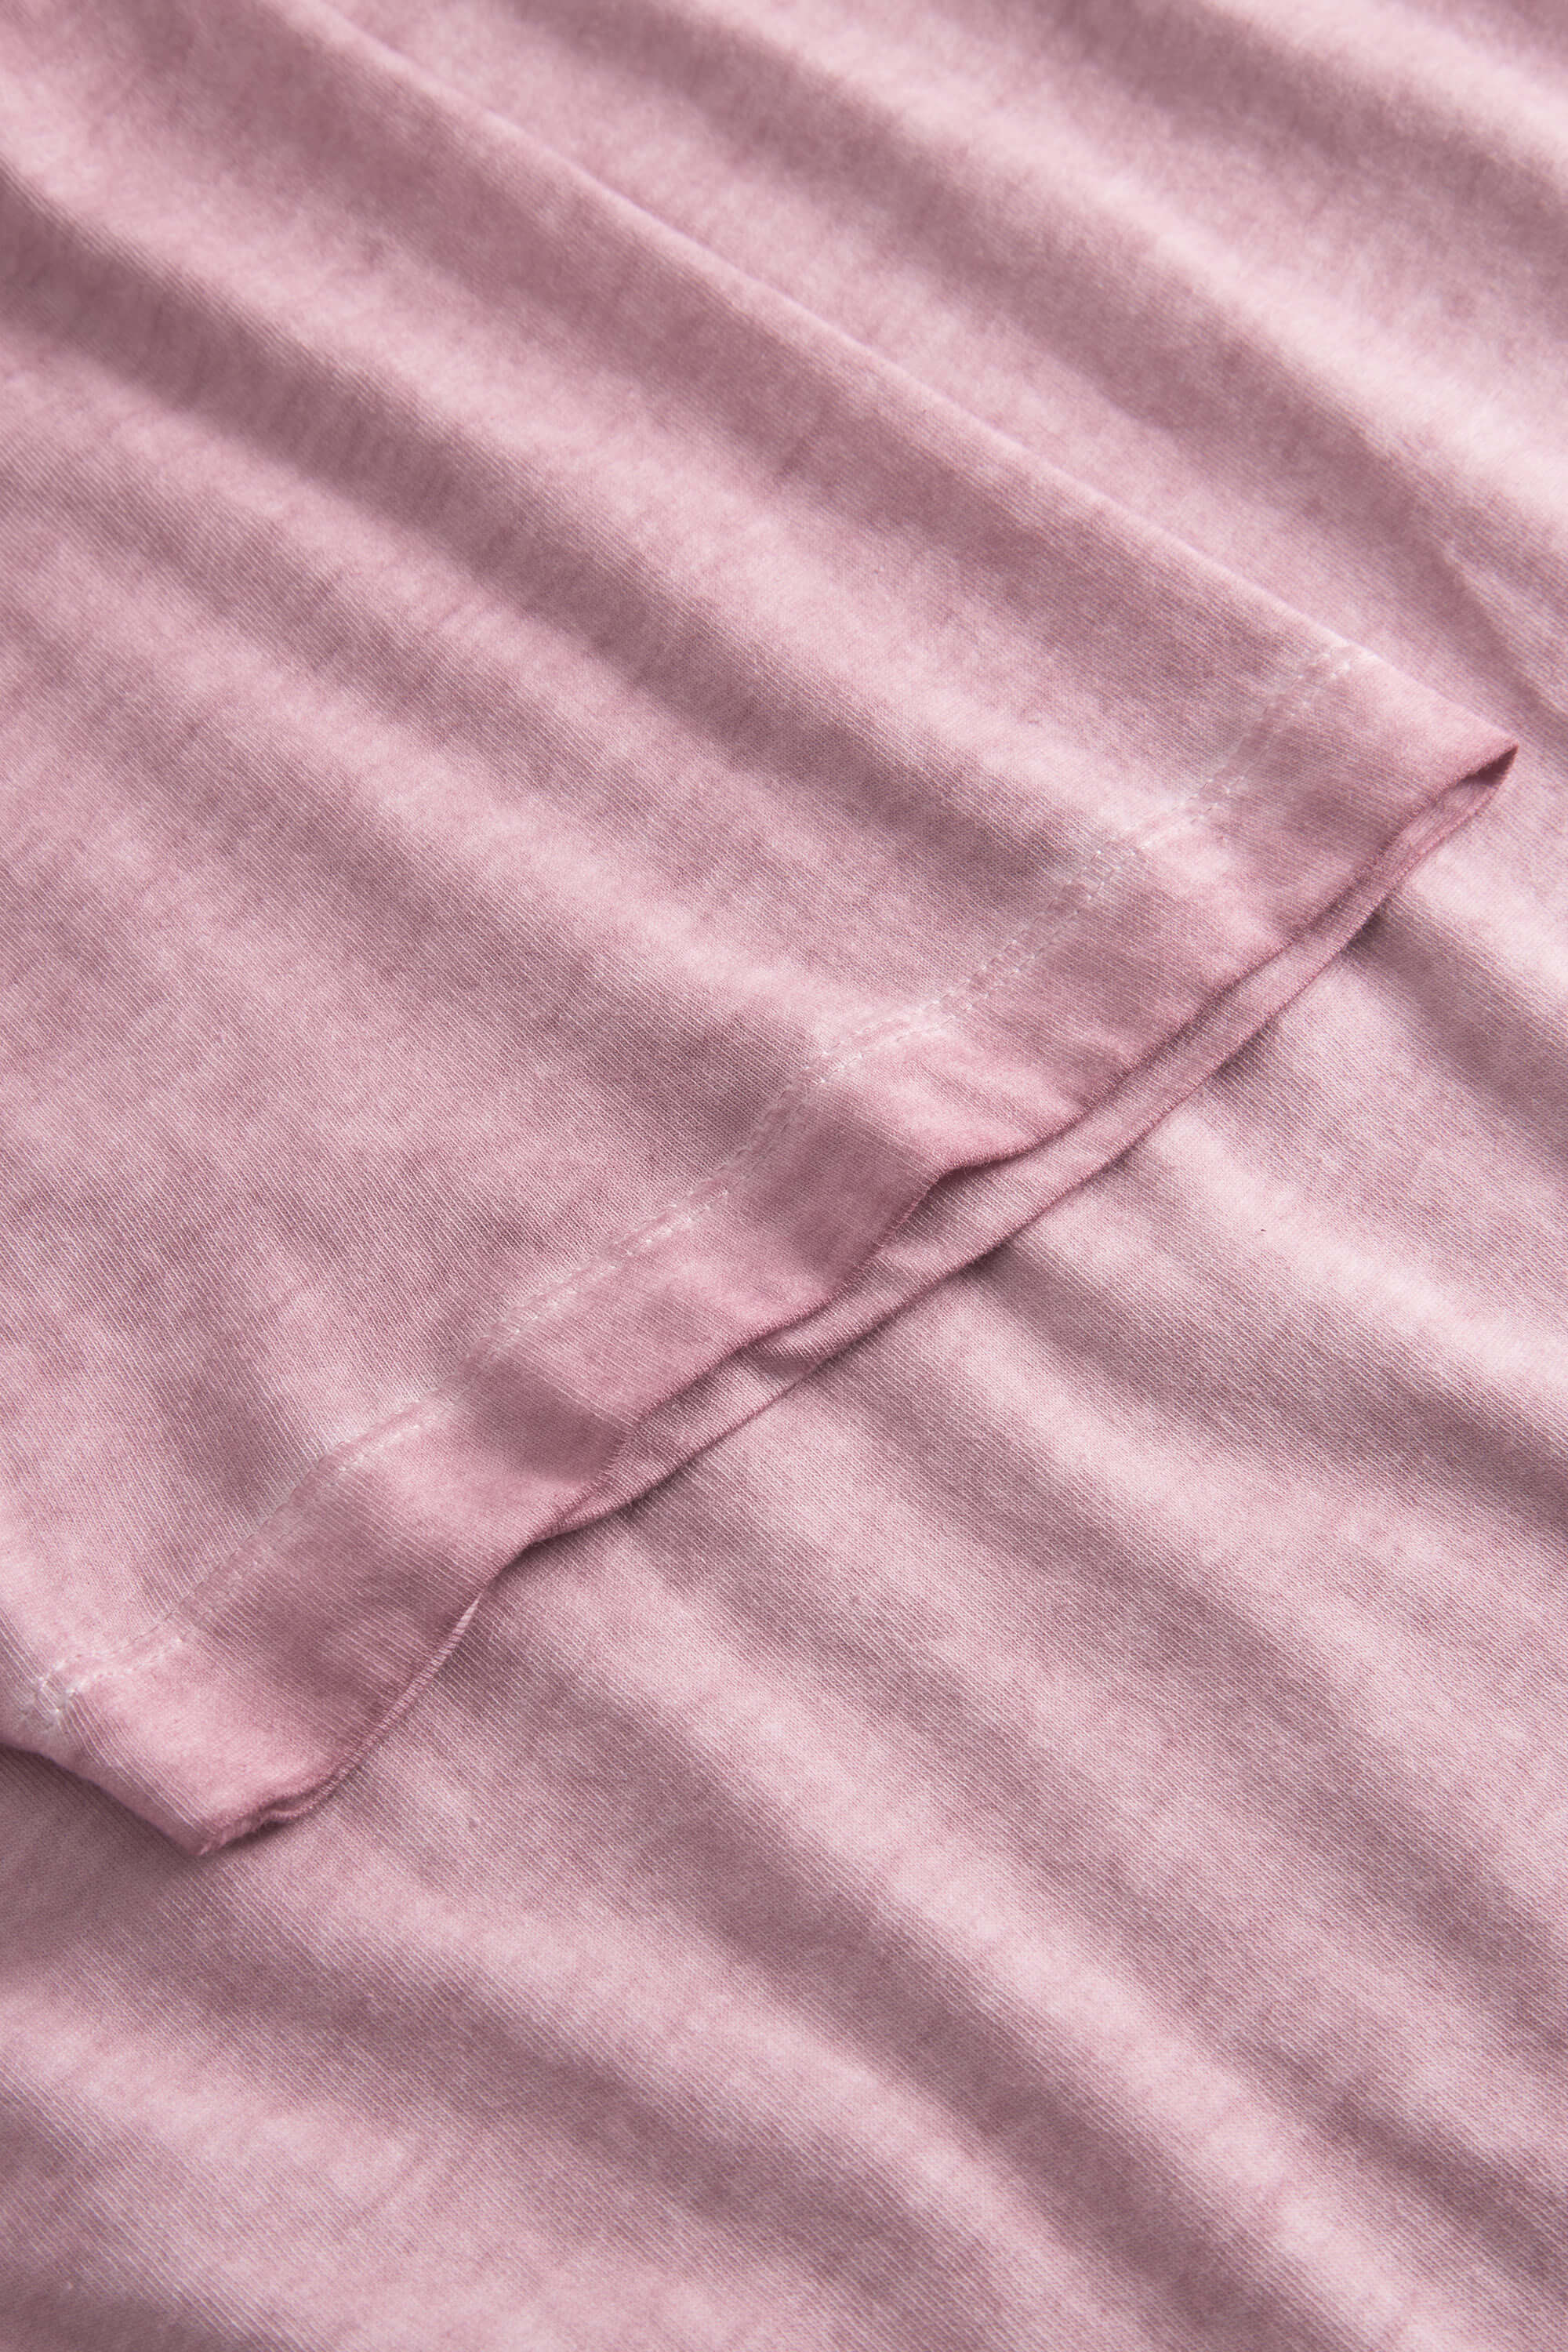 Herren T-Shirt, rosa, 100% Baumwolle von Colours & Sons